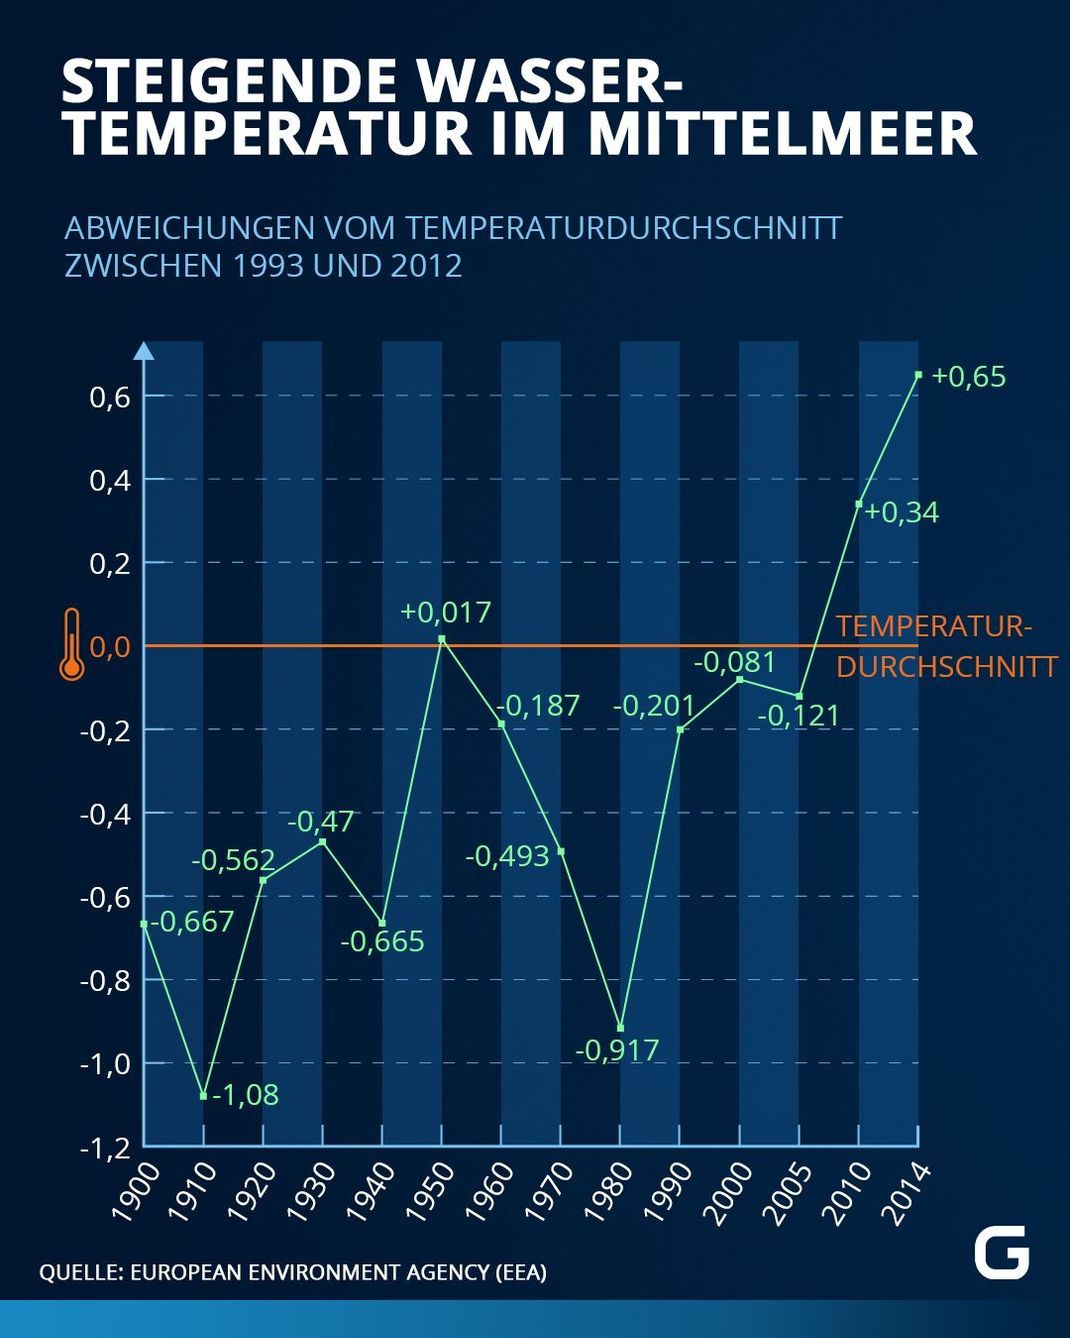 Abweichungen vom Temperaturdurchschnitt zwischen 1993 und 2012